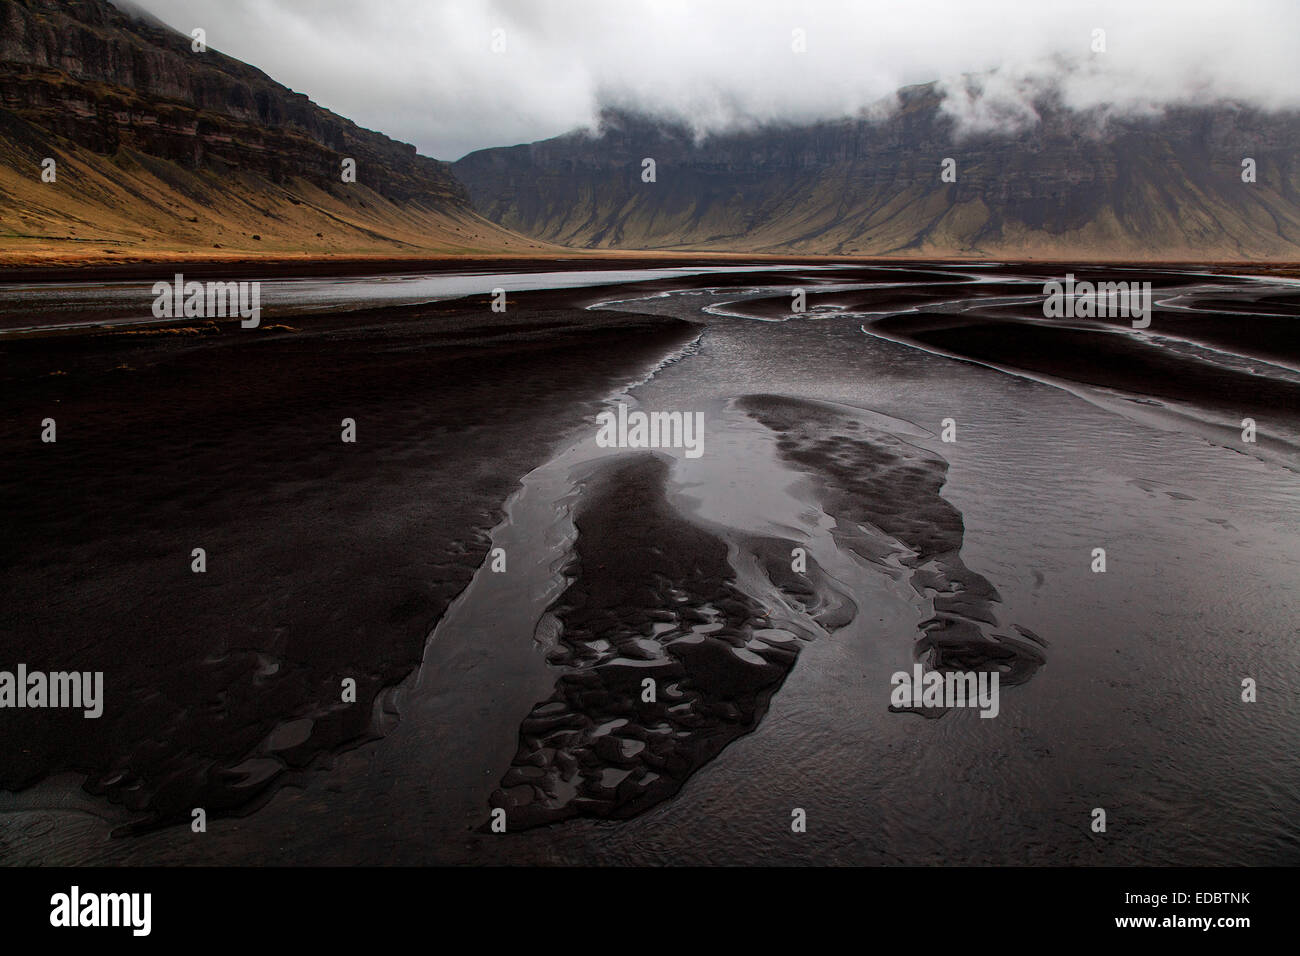 Paysage, rivière de sable de lave, montagnes, nuages, près de l'Islande, Nupsstadur Banque D'Images